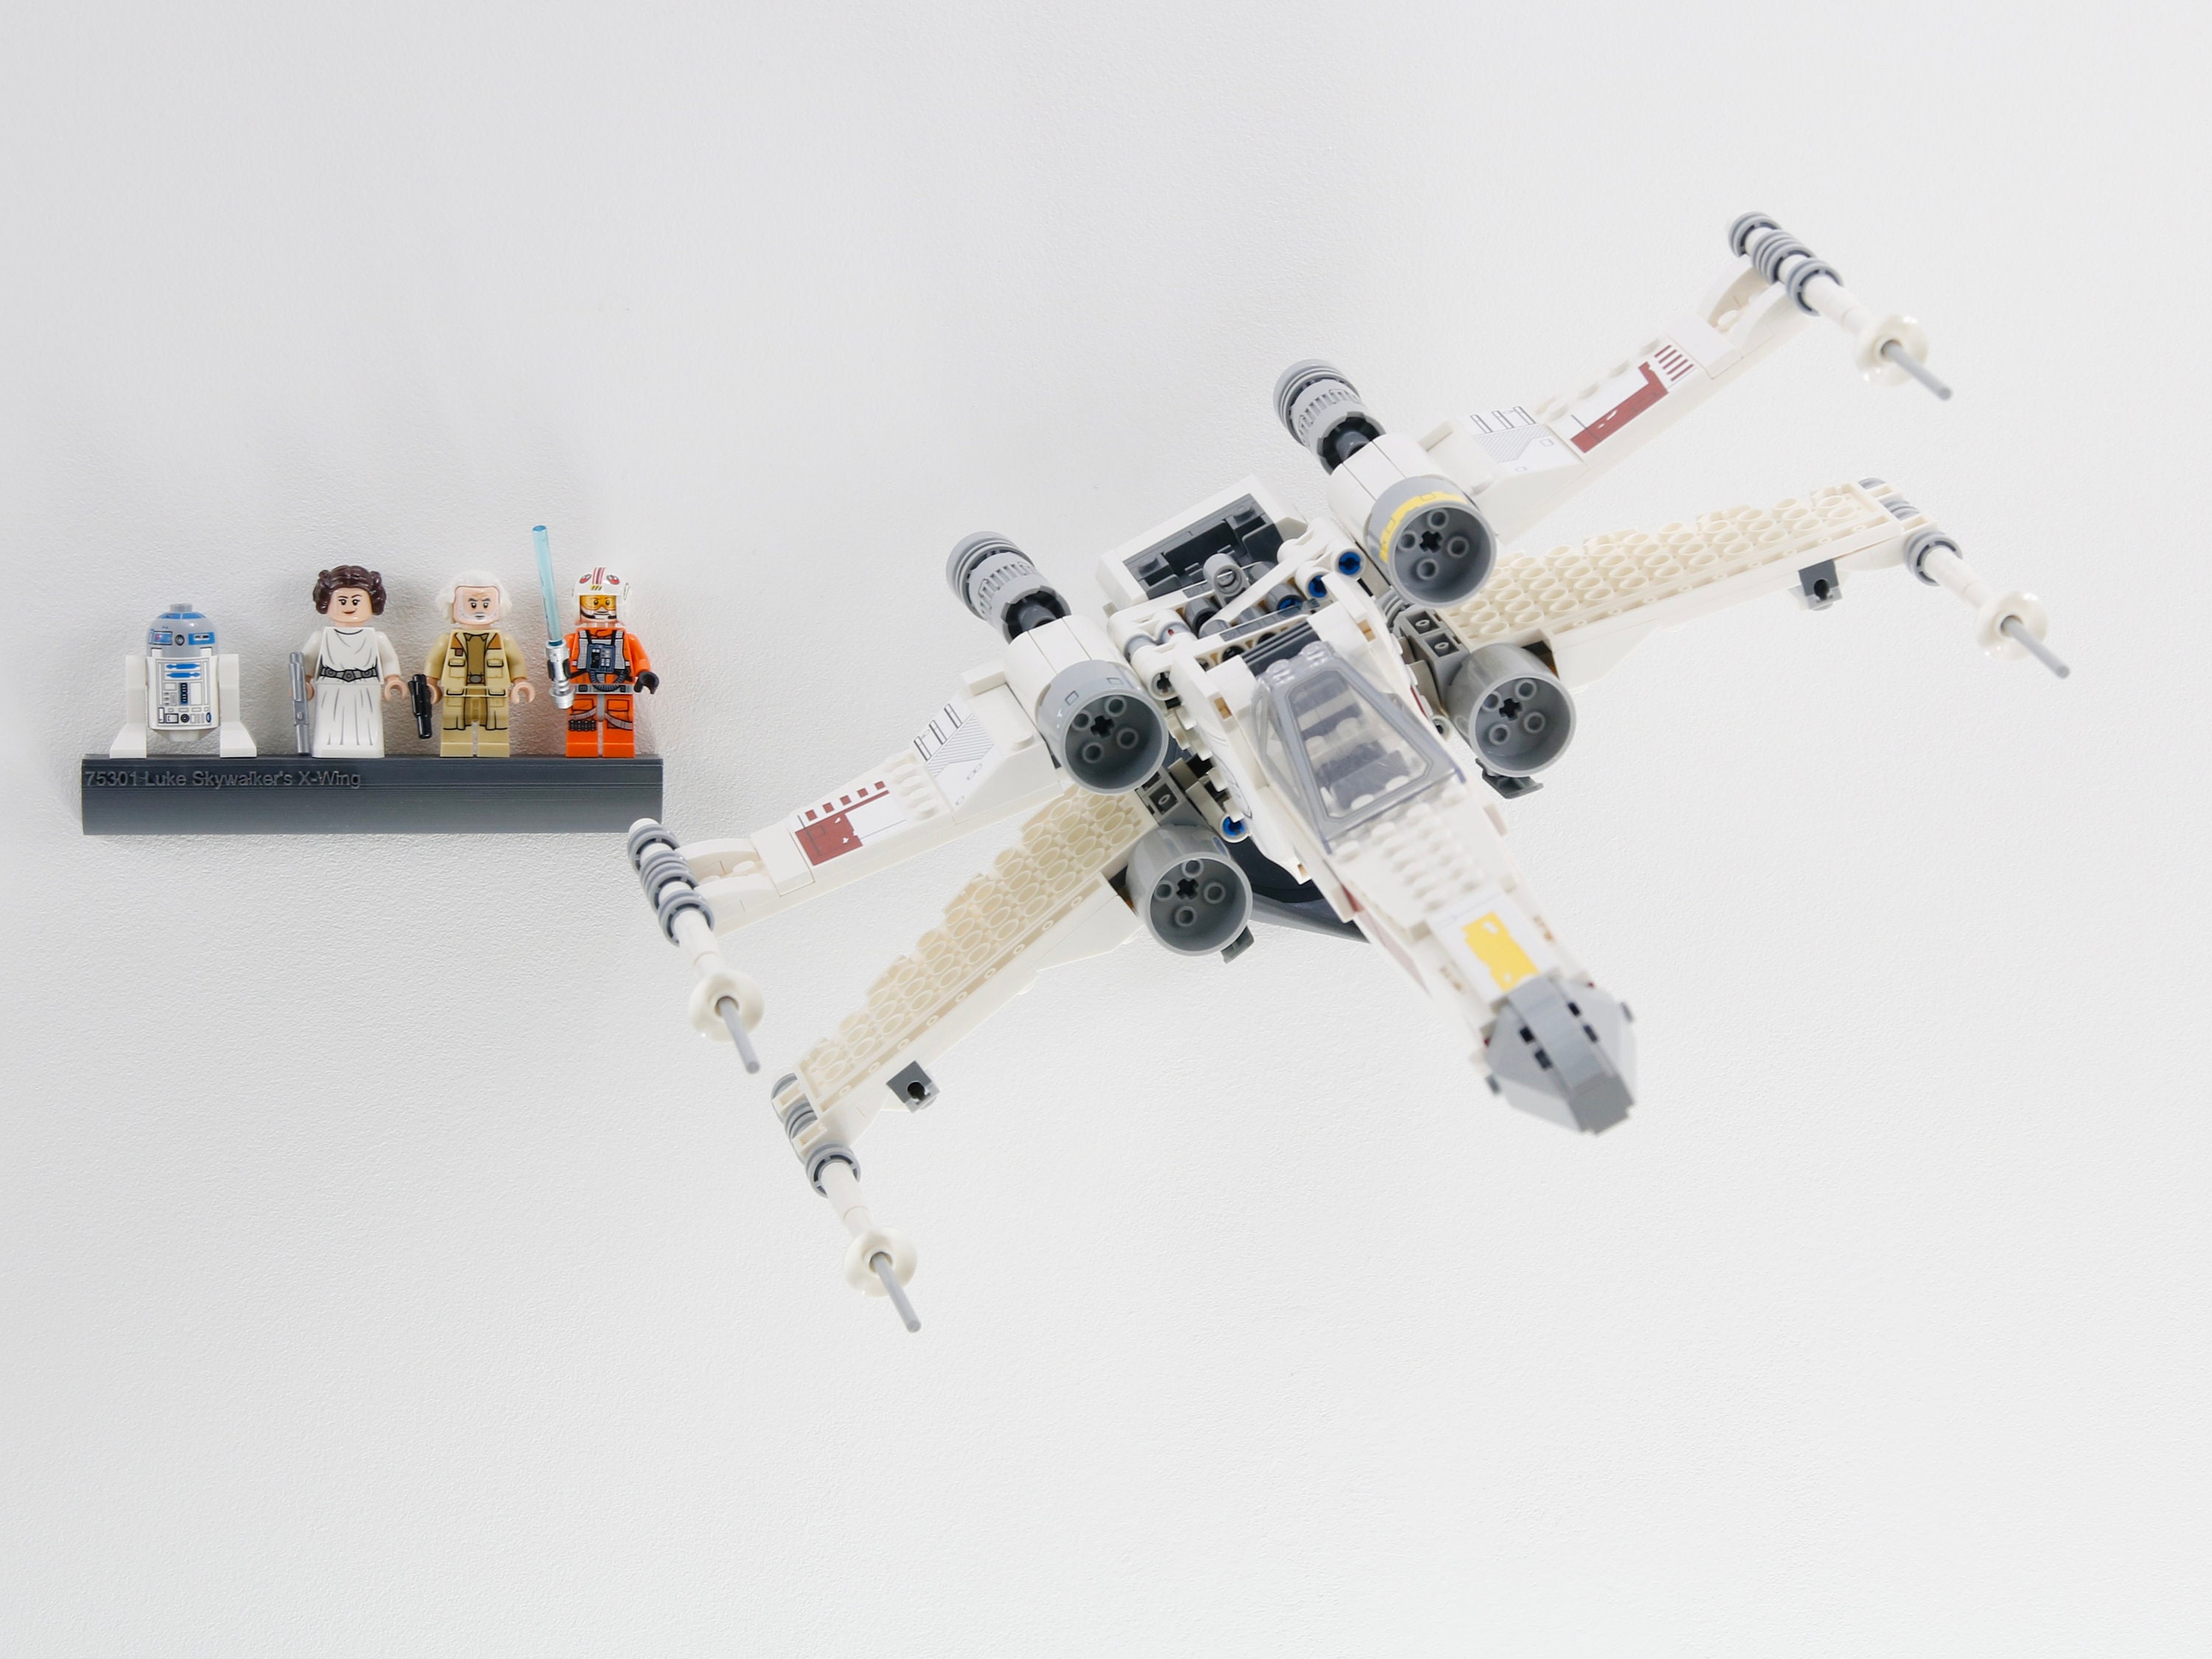 LEGO 75301 Star Wars X-Wing Fighter de Luke Skywalker: Jouet Vaisseau  Spatial avec Figurines Princesse